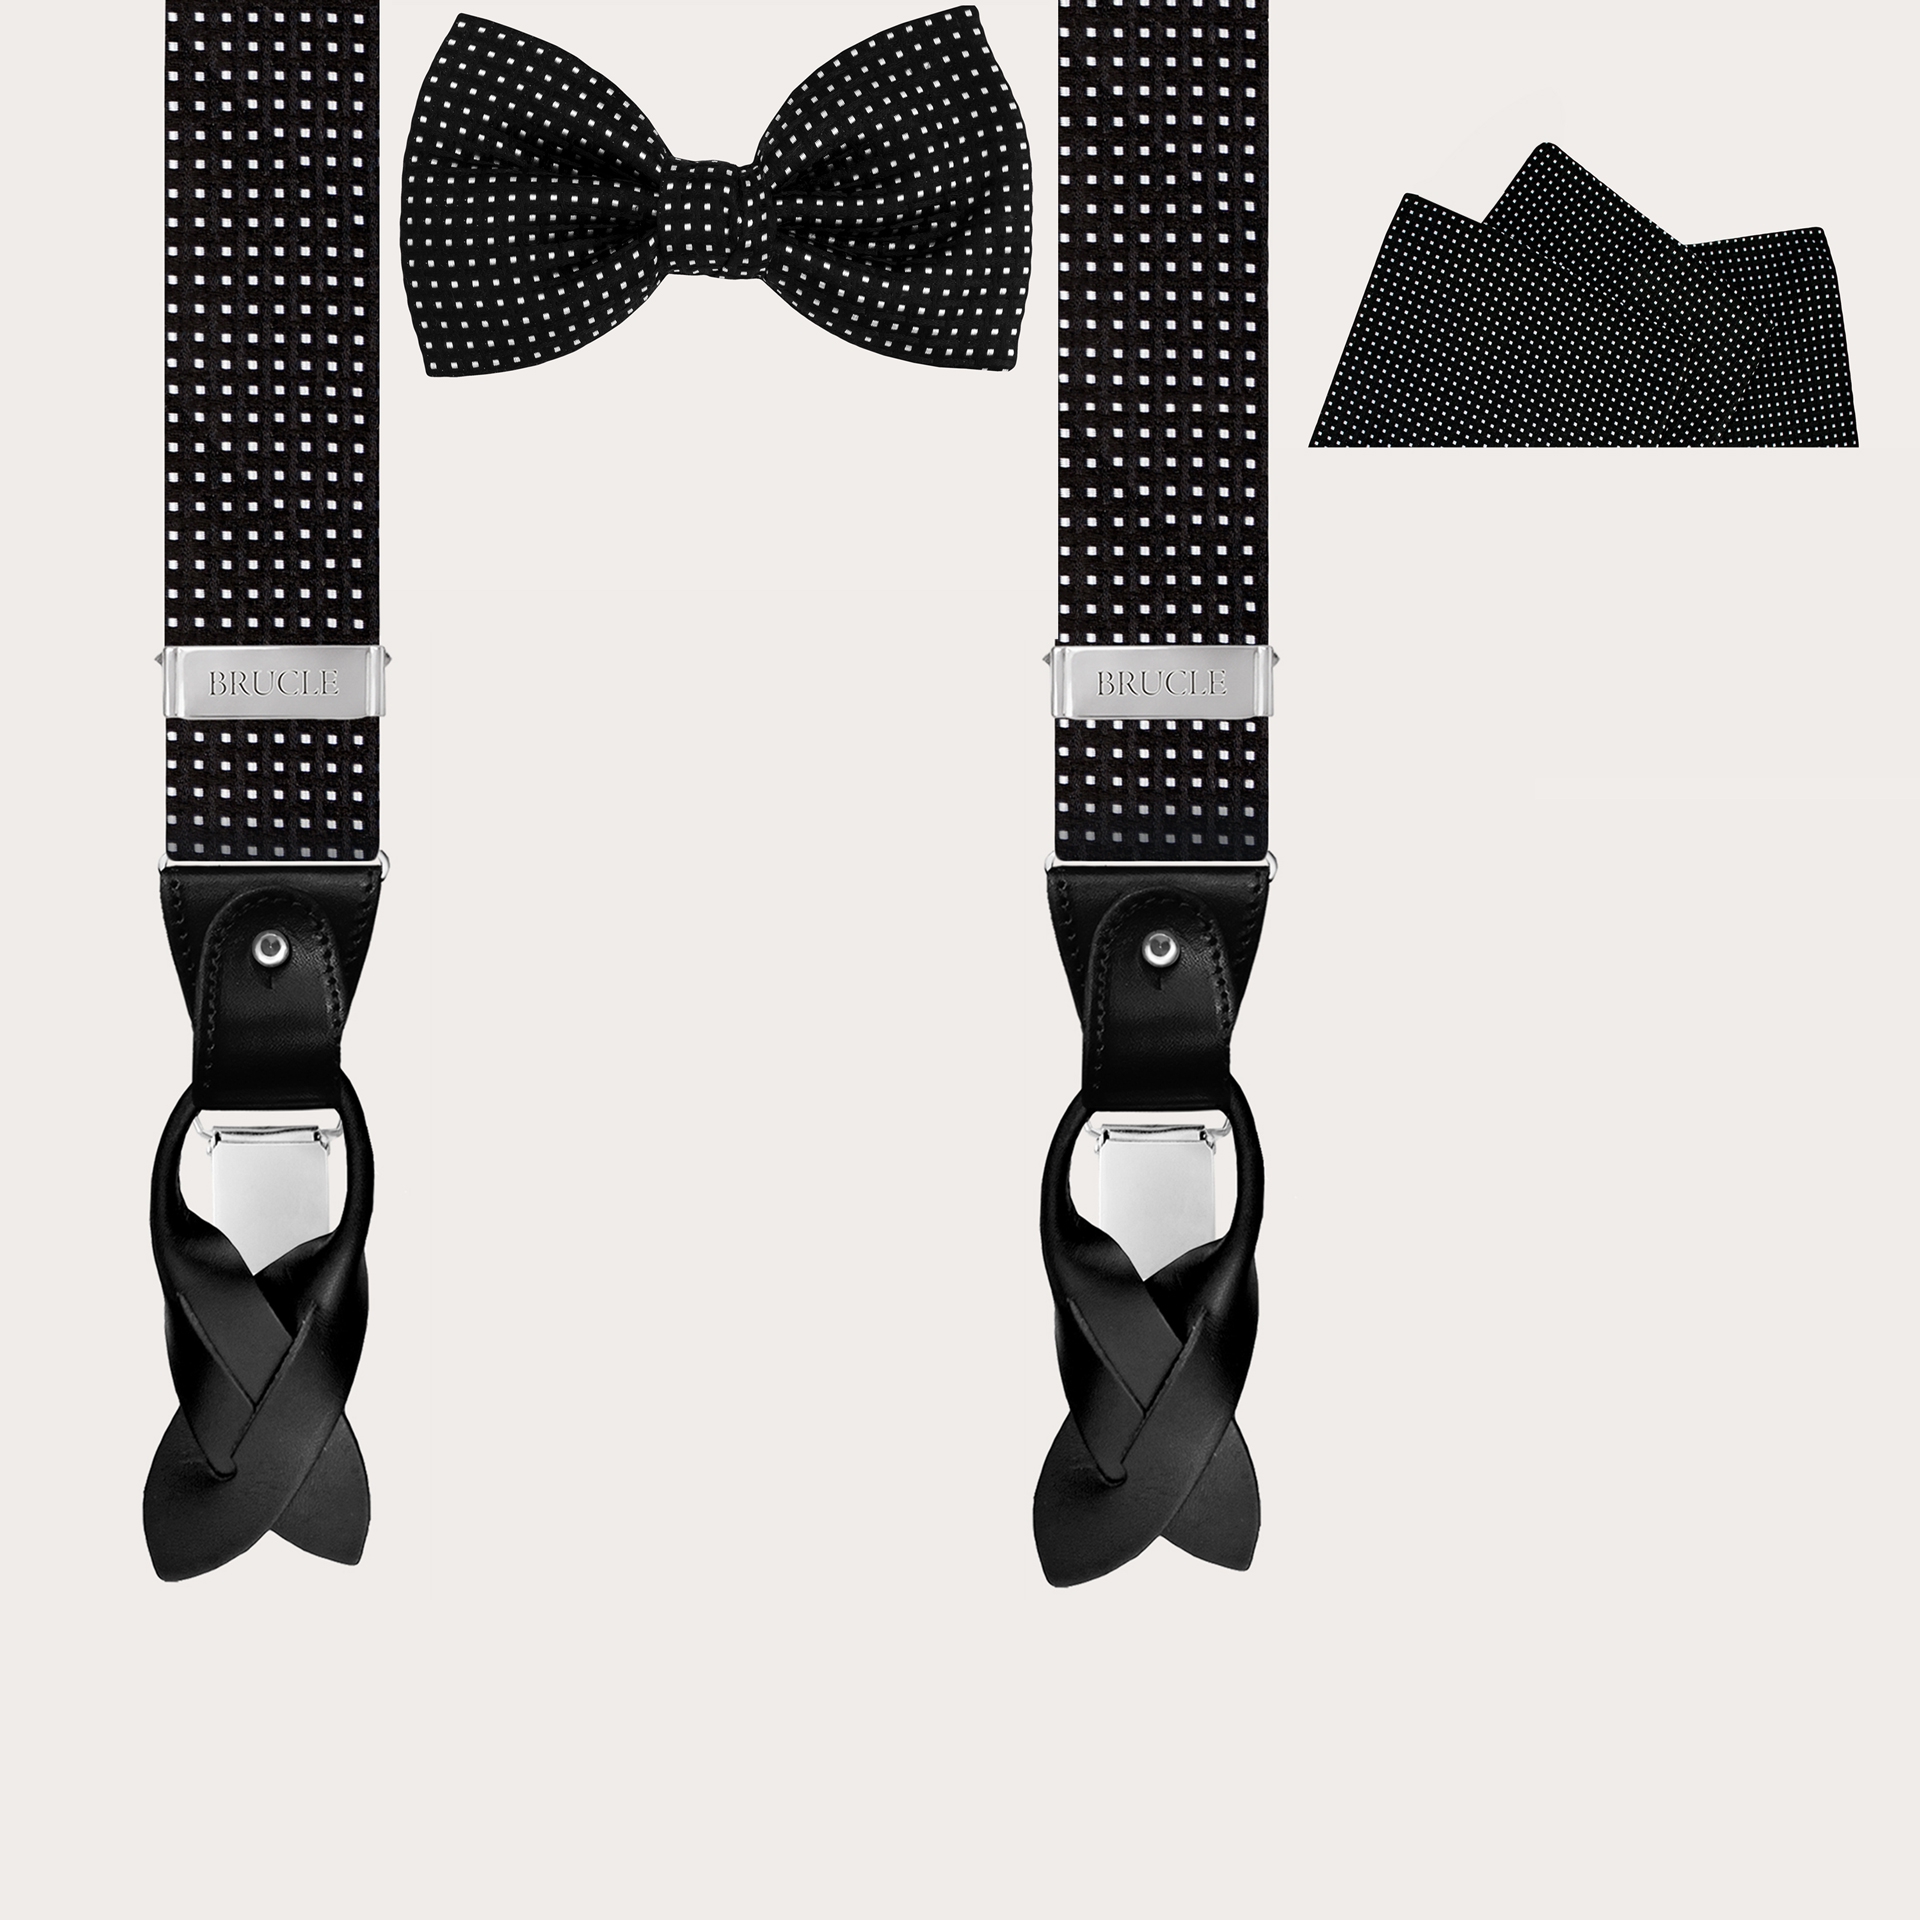 BRUCLE Set completo da sera in elegante seta jacquard nera con motivo geometrico, bretelle, papillon e pochette